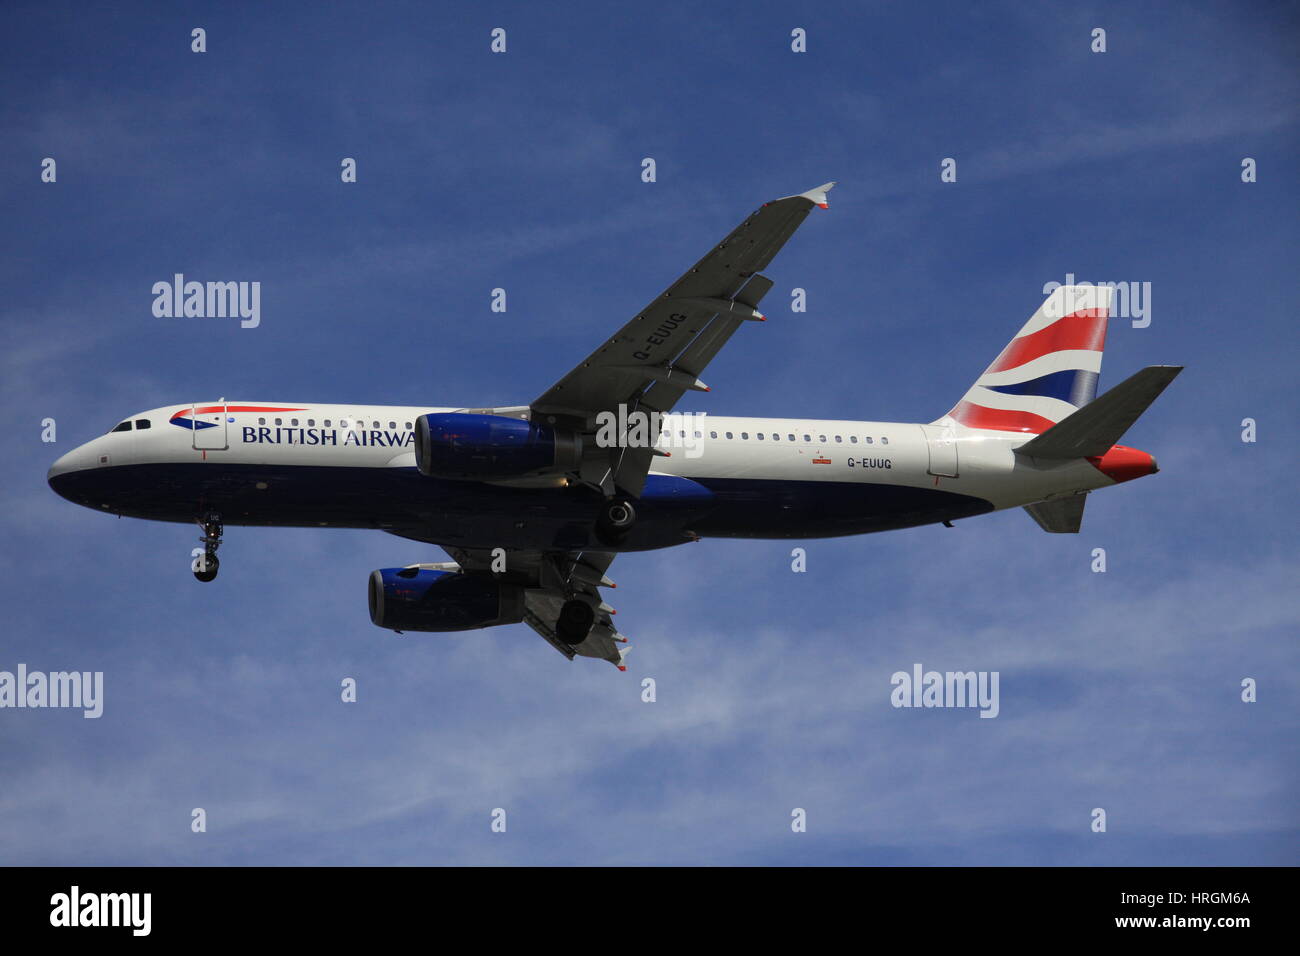 British Airways plane near Heathrow Airport, London, UK Stock Photo